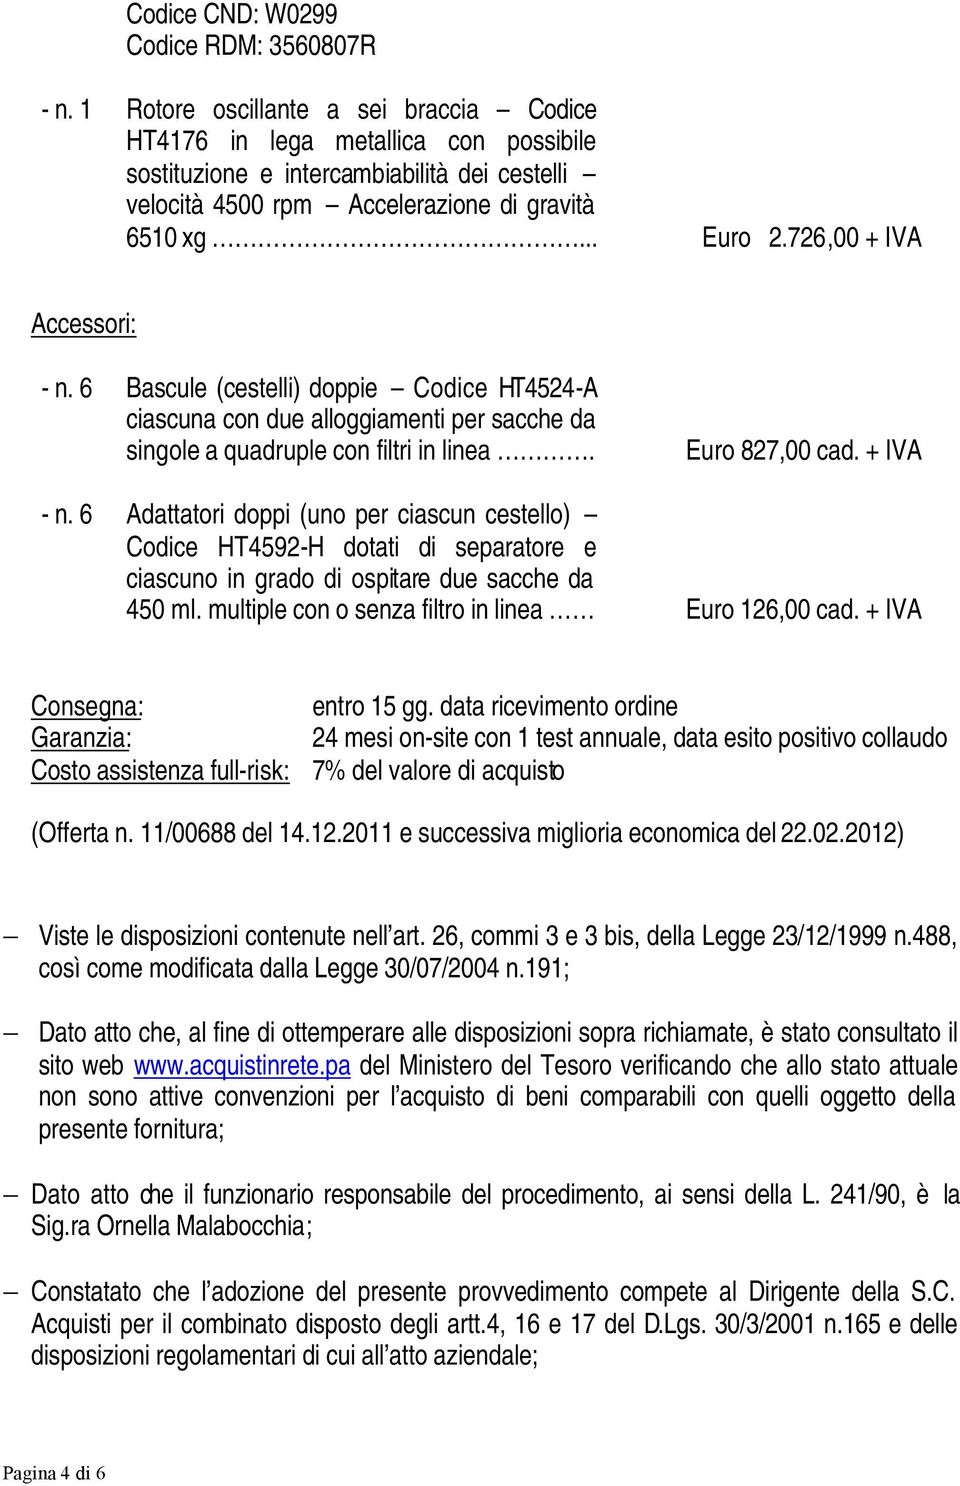 726,00 + IVA Accessori: - n. 6 Bascule (cestelli) doppie Codice HT4524-A ciascuna con due alloggiamenti per sacche da singole a quadruple con filtri in linea. Euro 827,00 cad. + IVA - n.